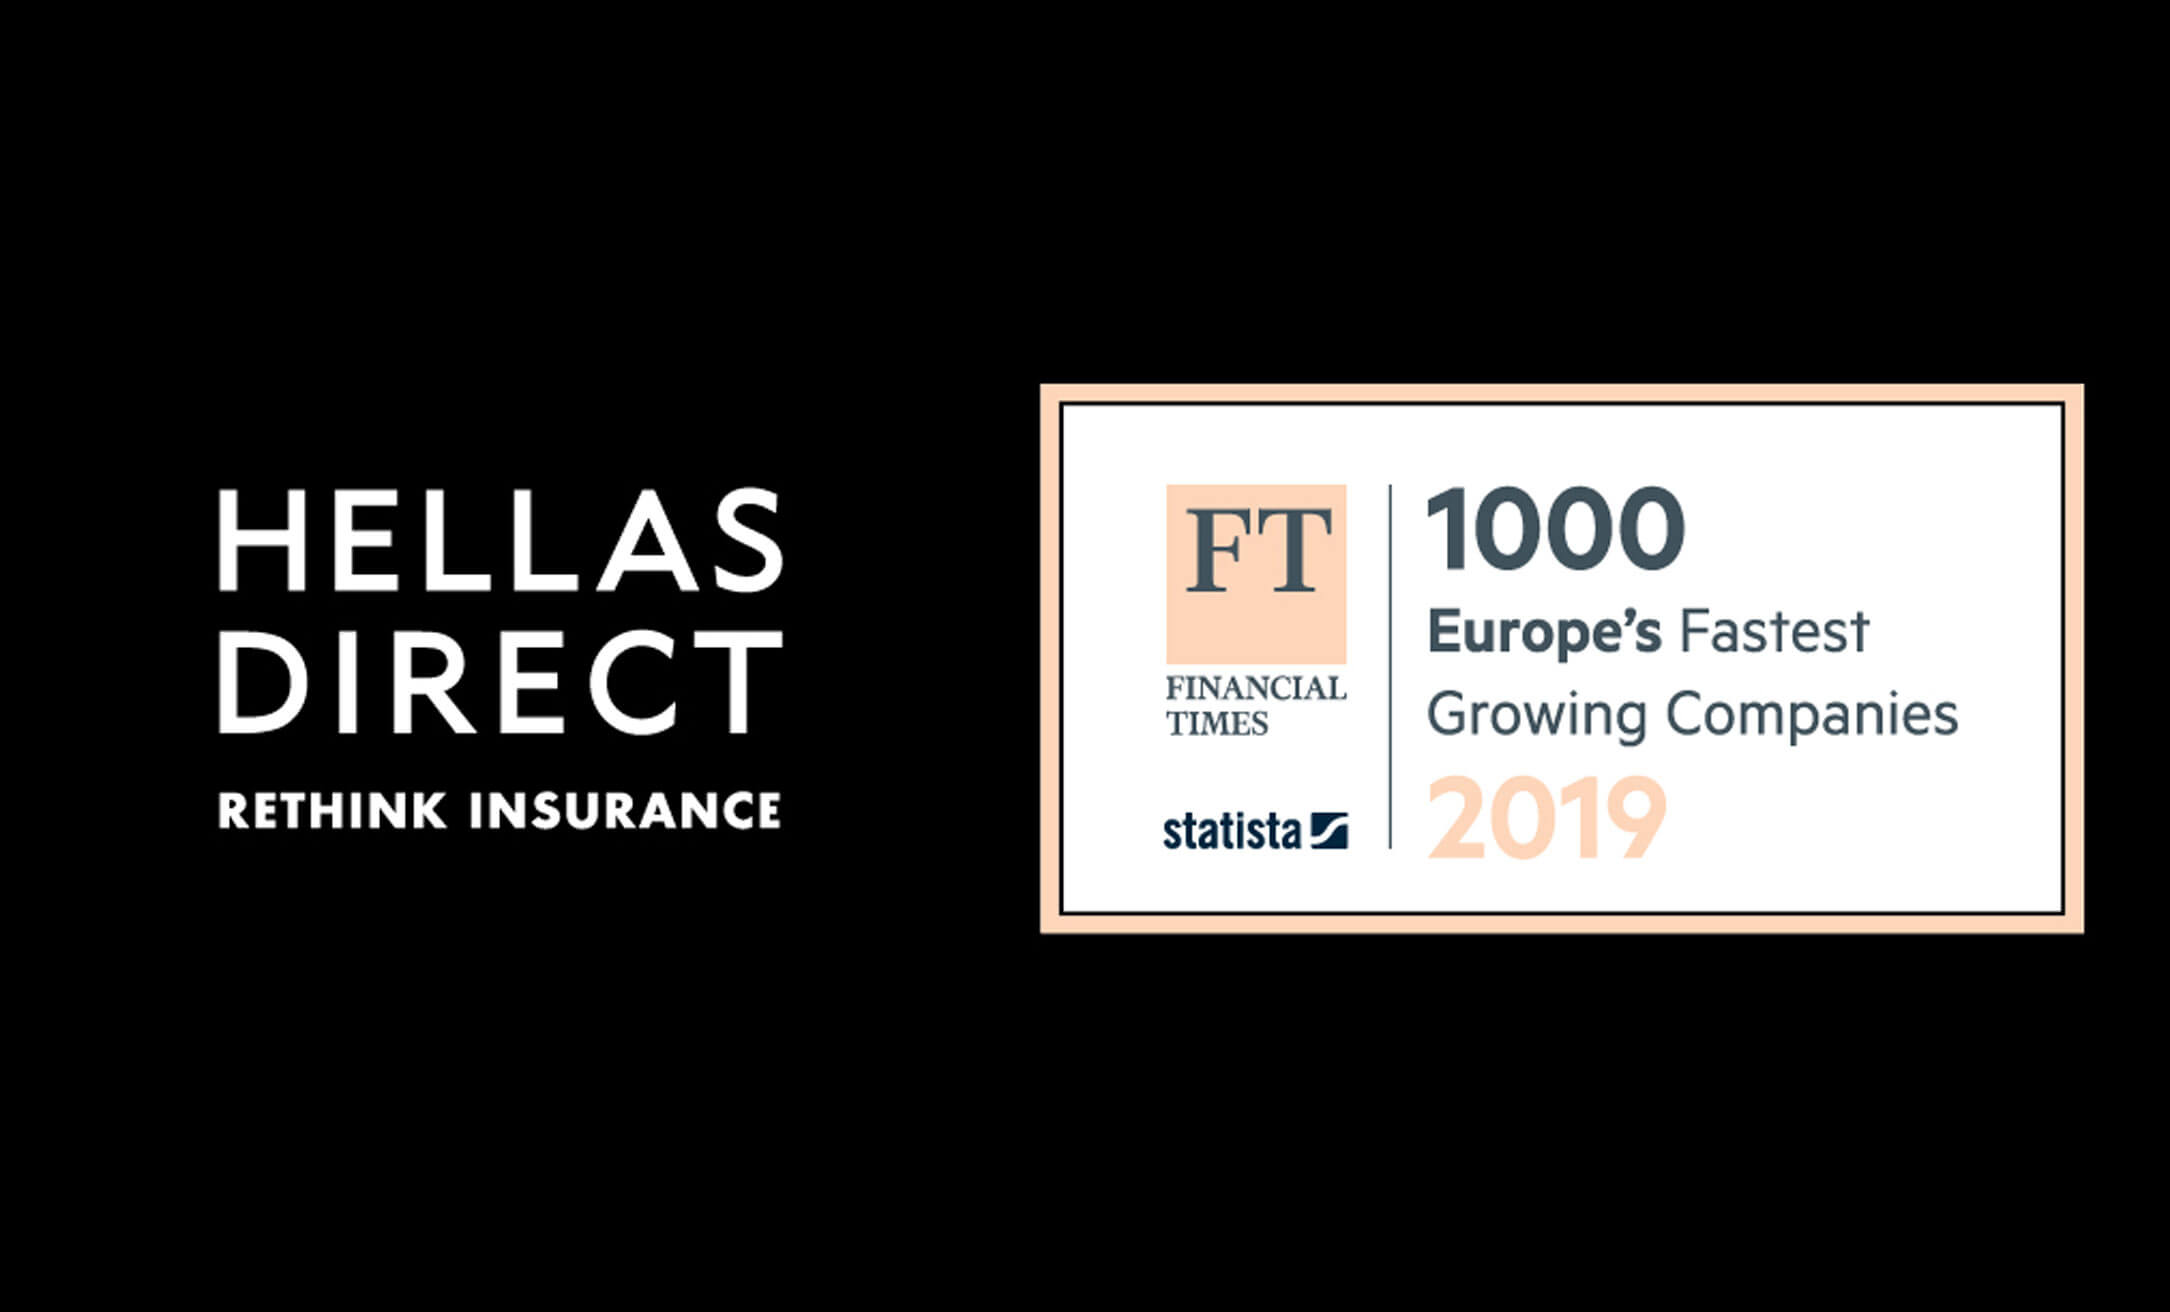 Η Hellas Direct στη λίστα FT 1000 των Financial Times με τις ταχύτερα αναπτυσσόμενες εταιρίες στην Ευρώπη